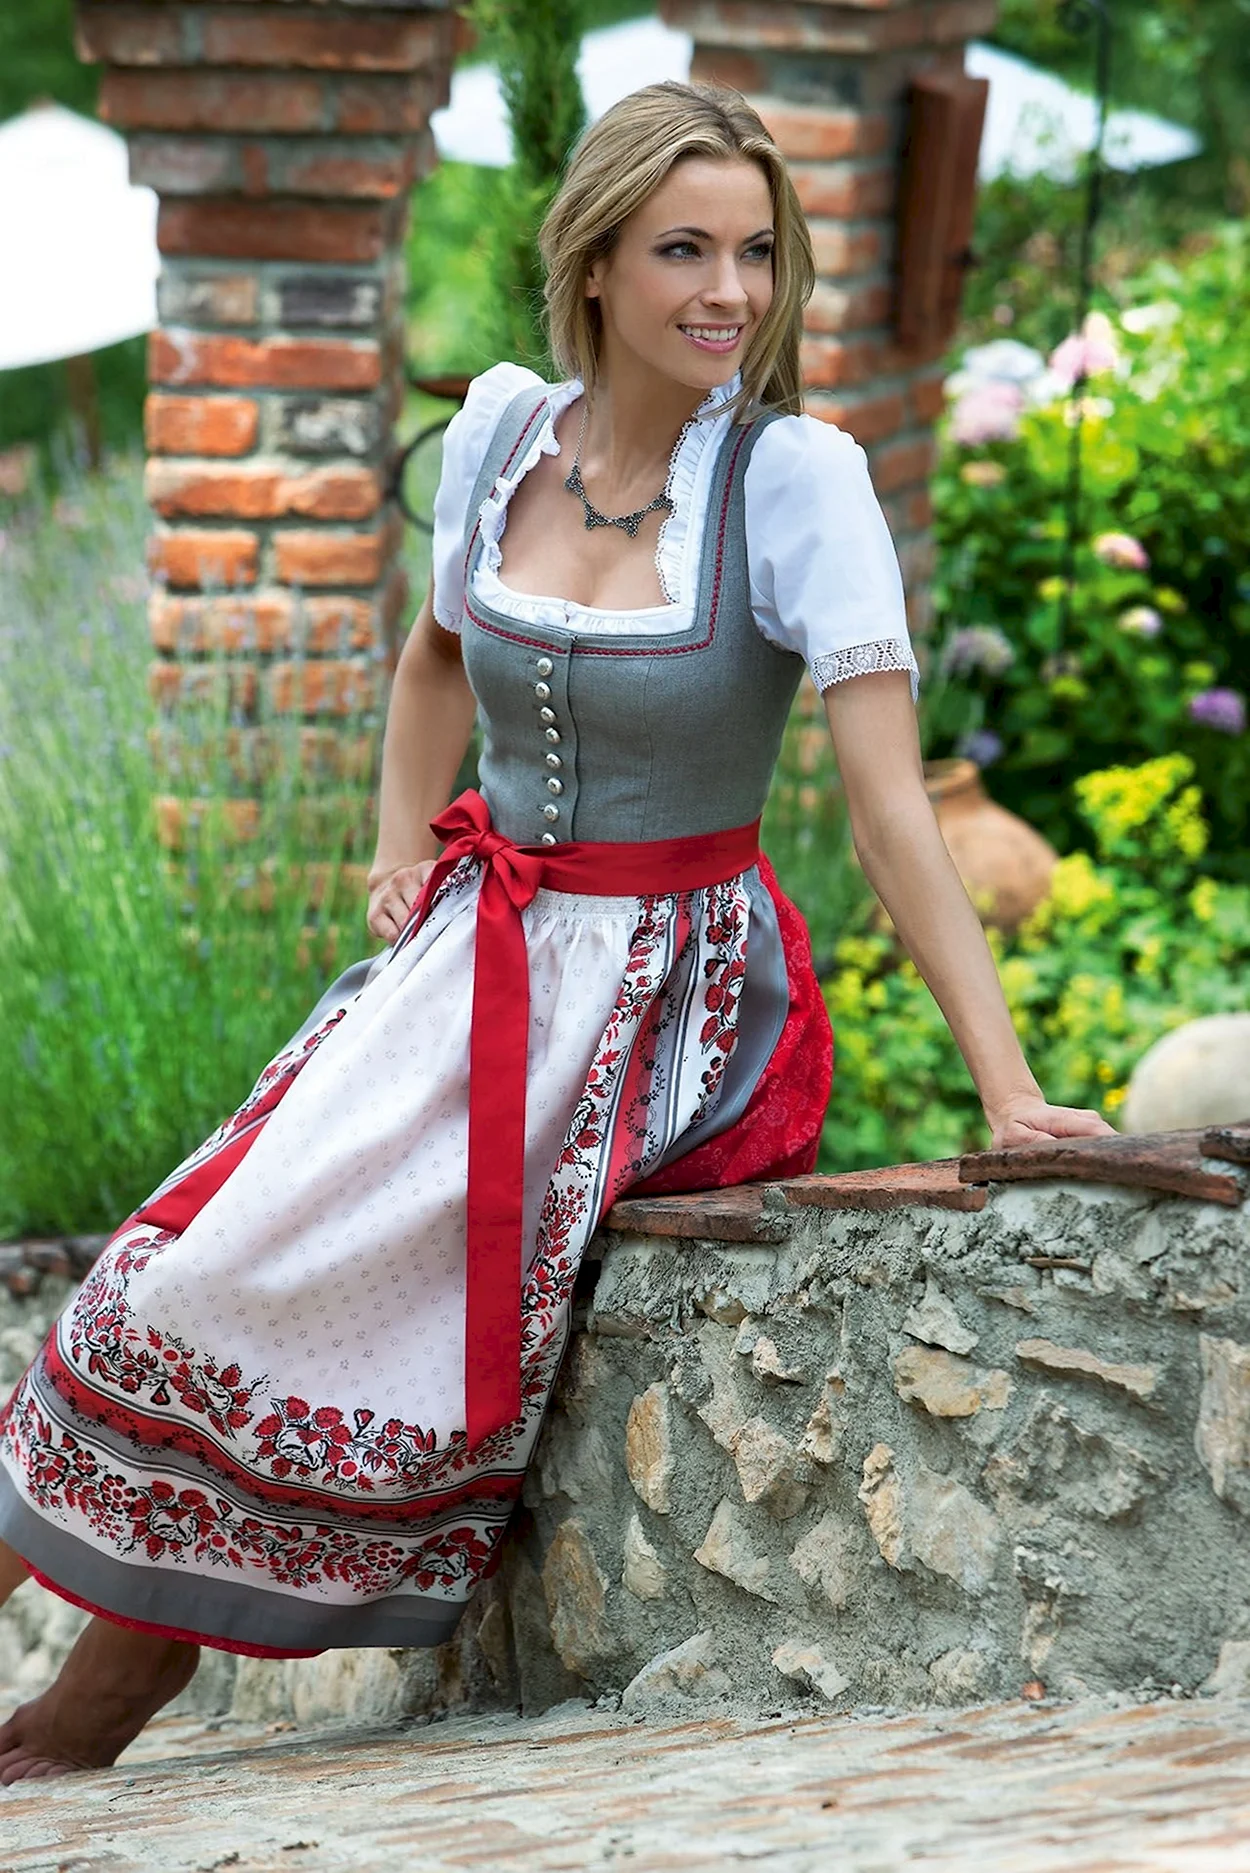 Дирндль национальный костюм Германии. Красивая девушка